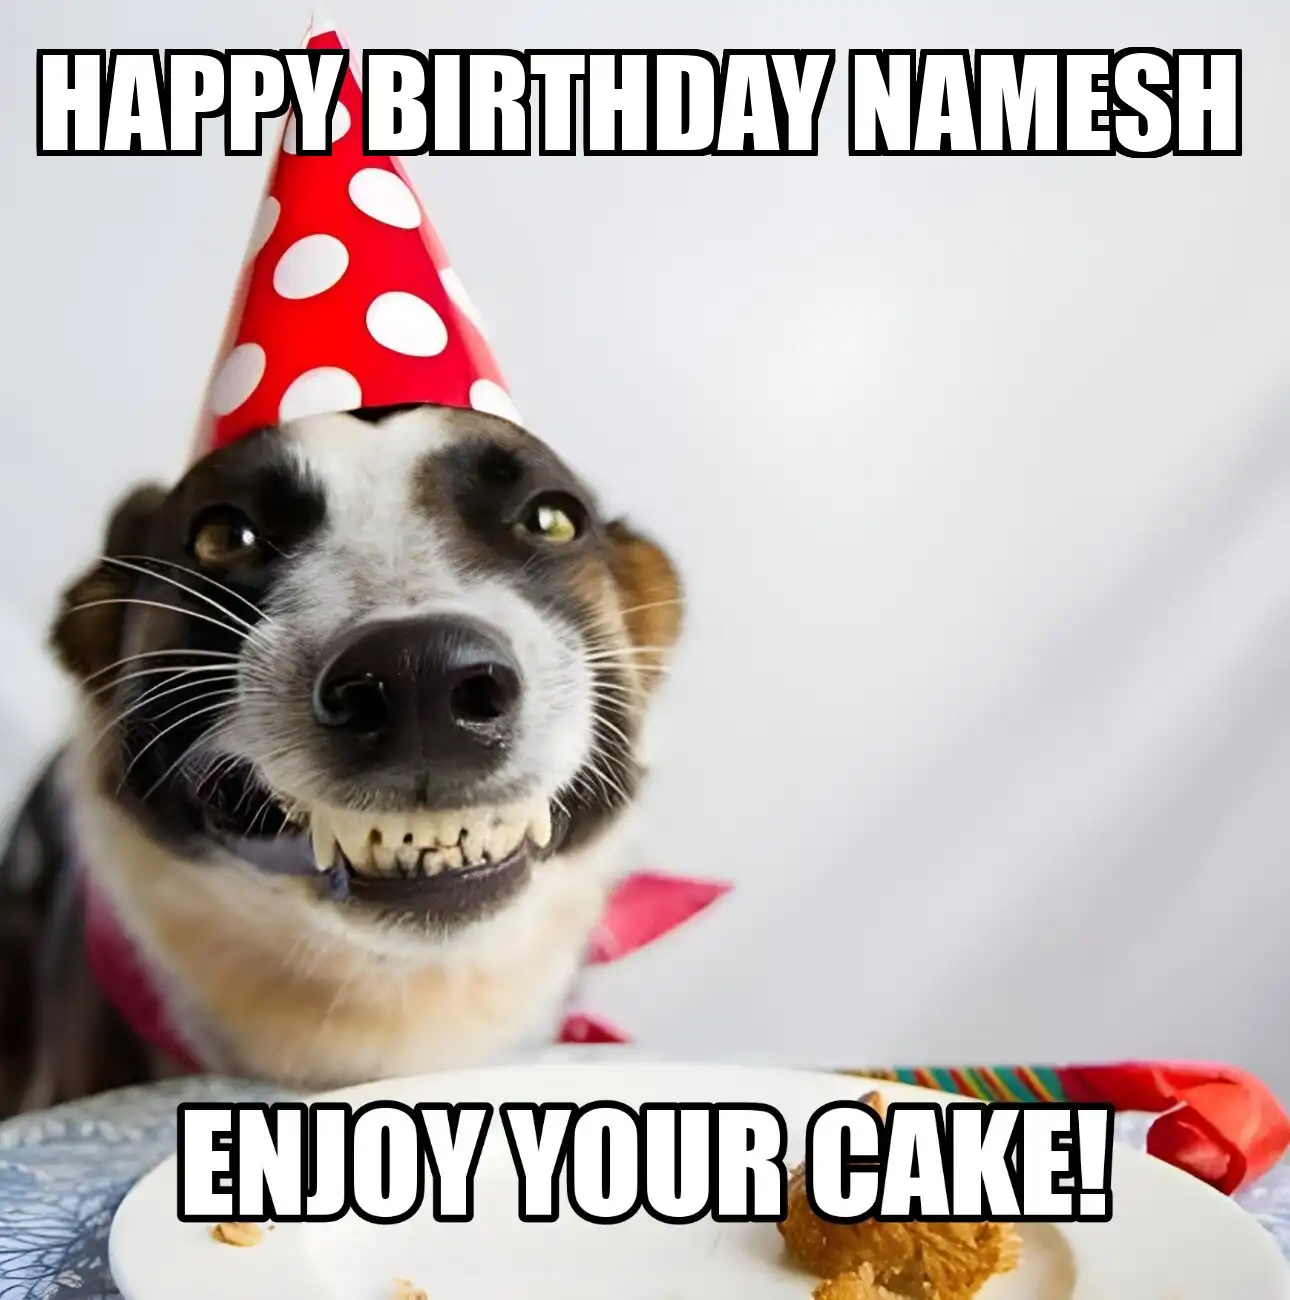 Happy Birthday Namesh Enjoy Your Cake Dog Meme